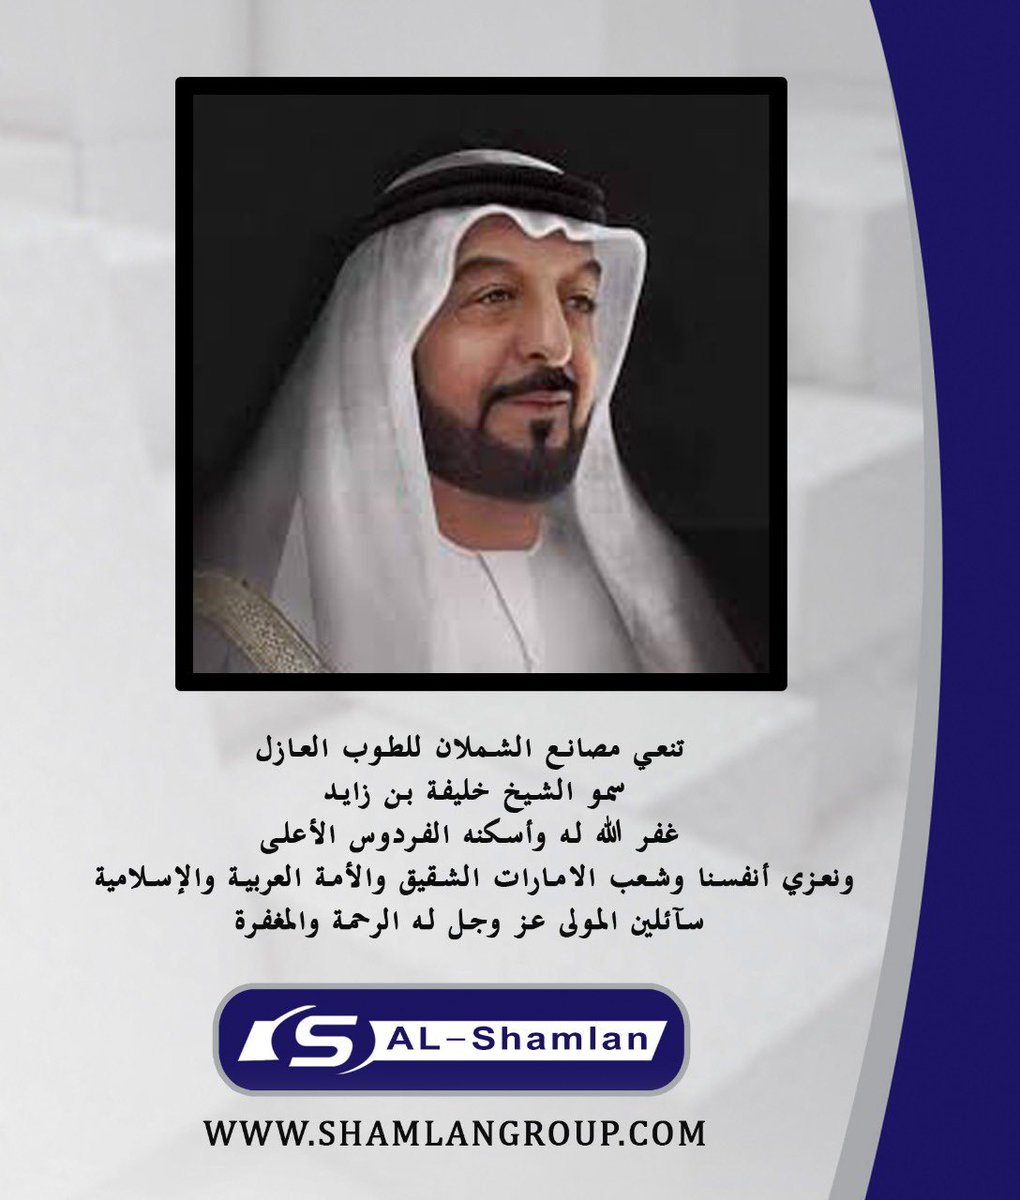 رسالة شكر للملك عبدالعزيز سطرين فقط